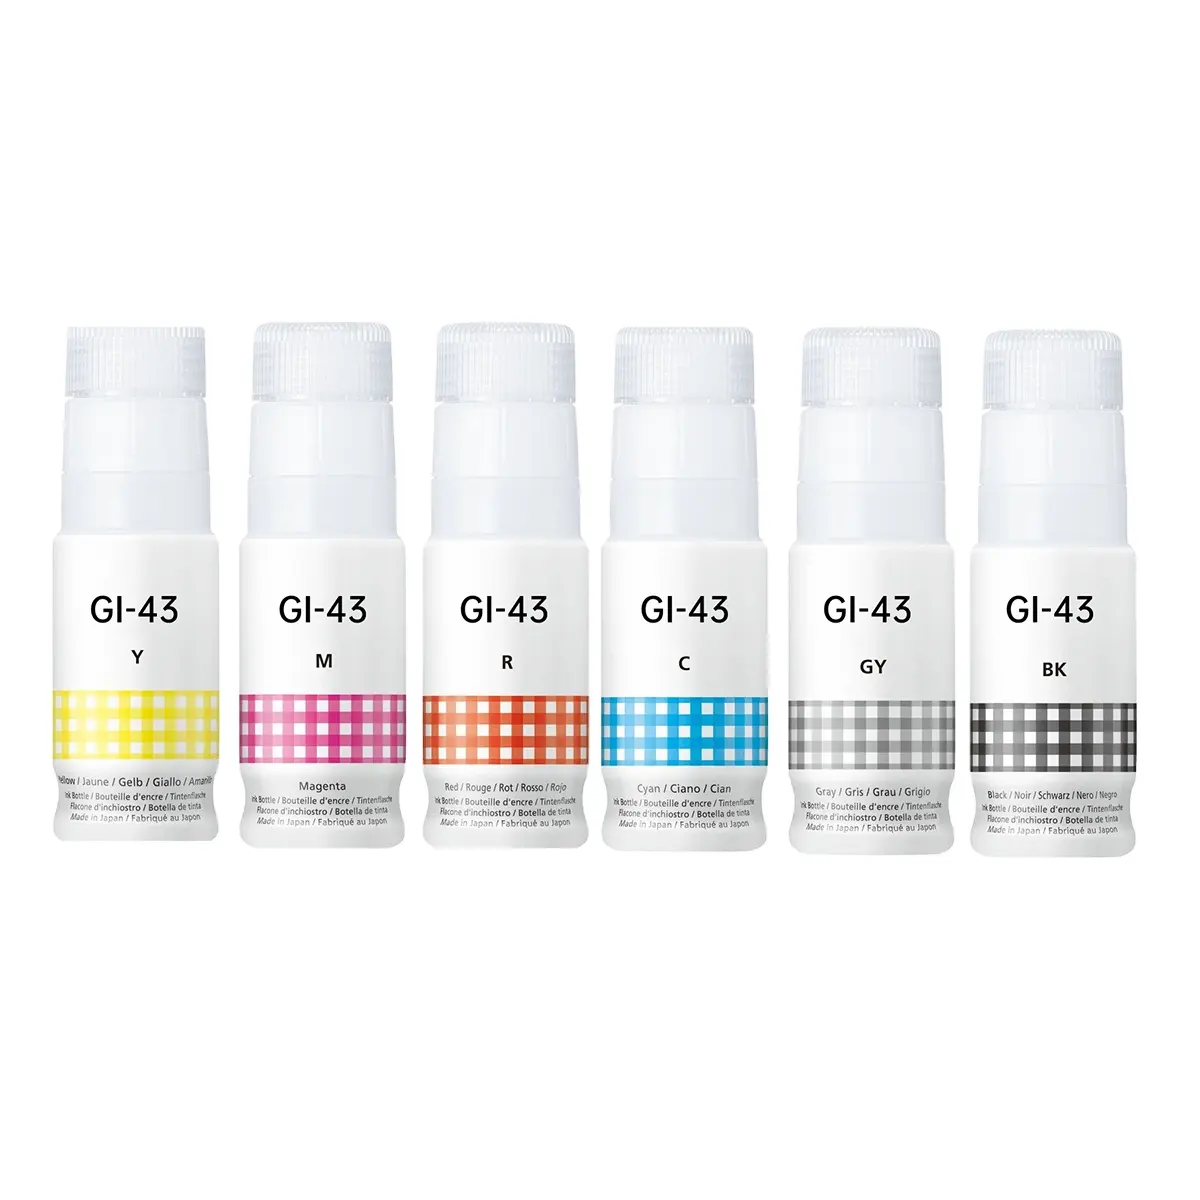 Printfles Premium Navulling Bulk Universele Kleurstofinkt GI-43 Compatibel Voor Inkttank G570/G670